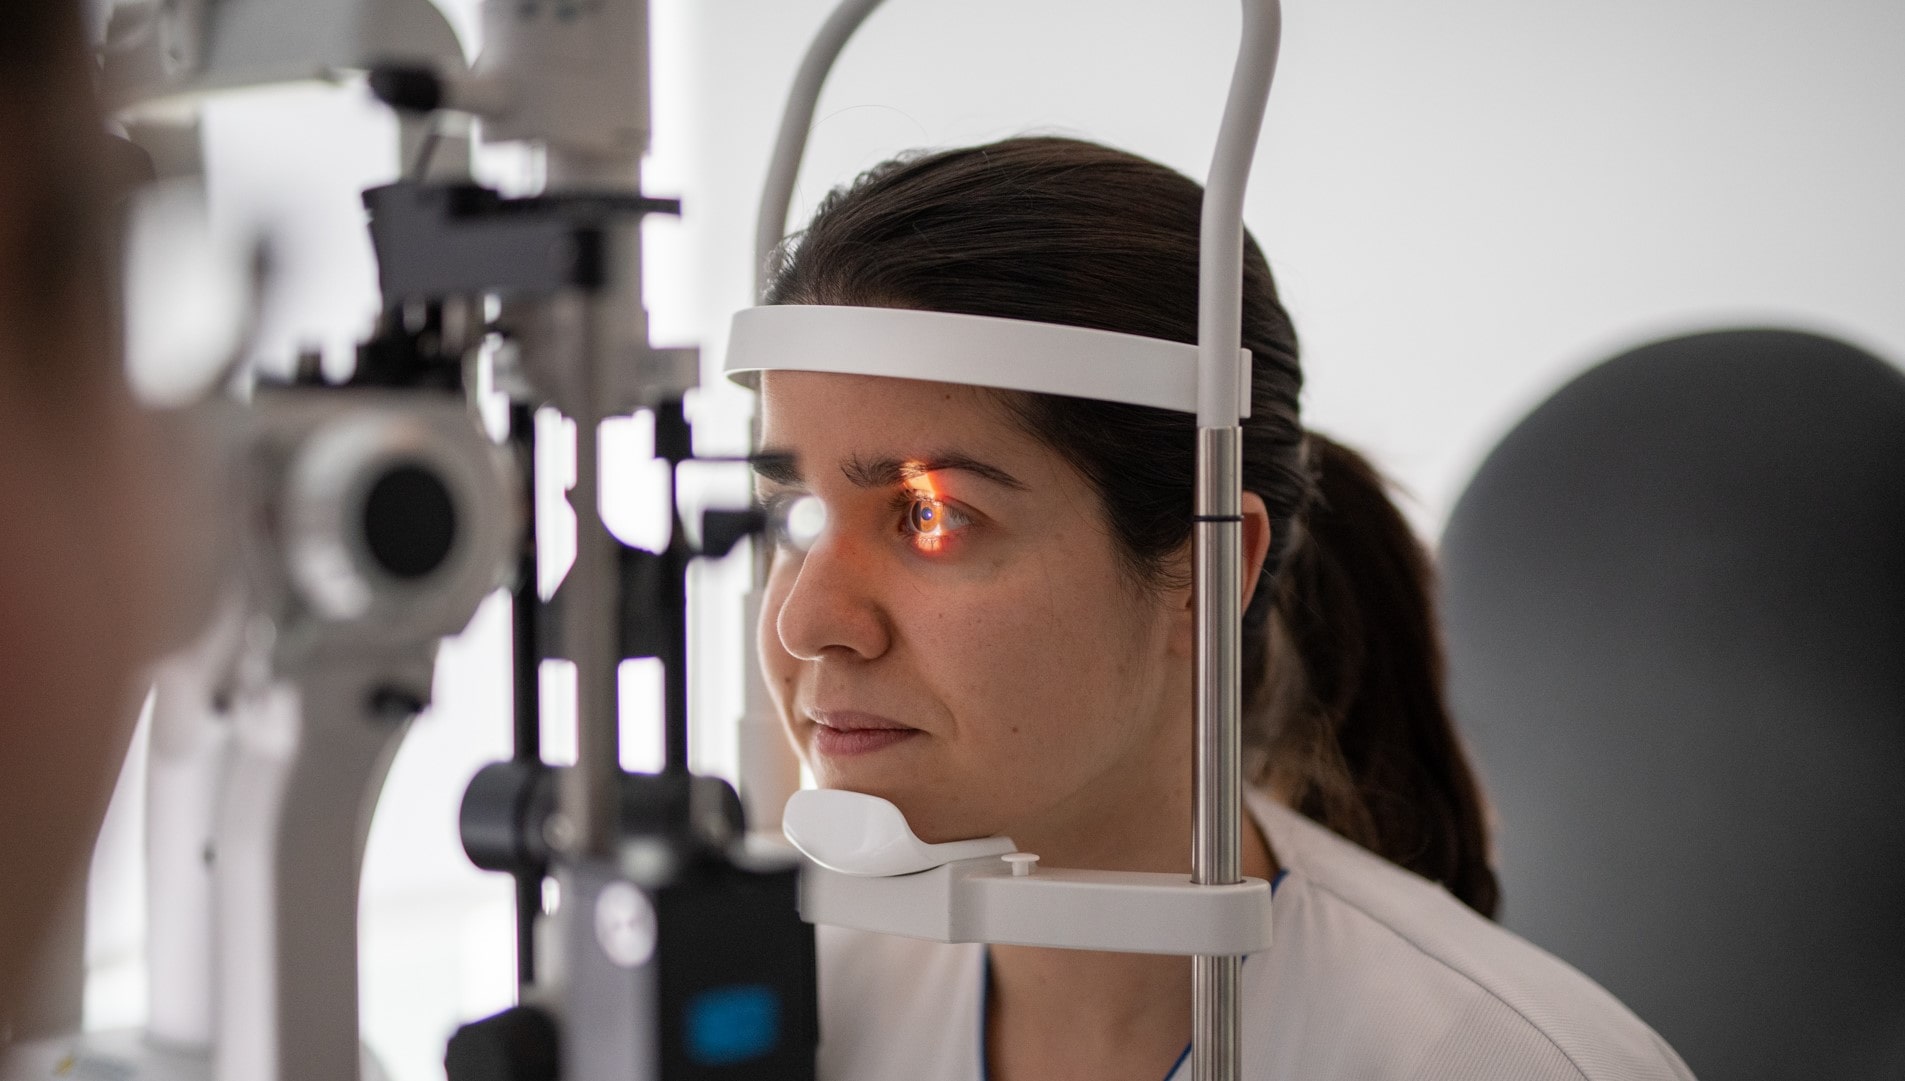 Bilan de la vue d'une patiente avant l'opération laser des yeux